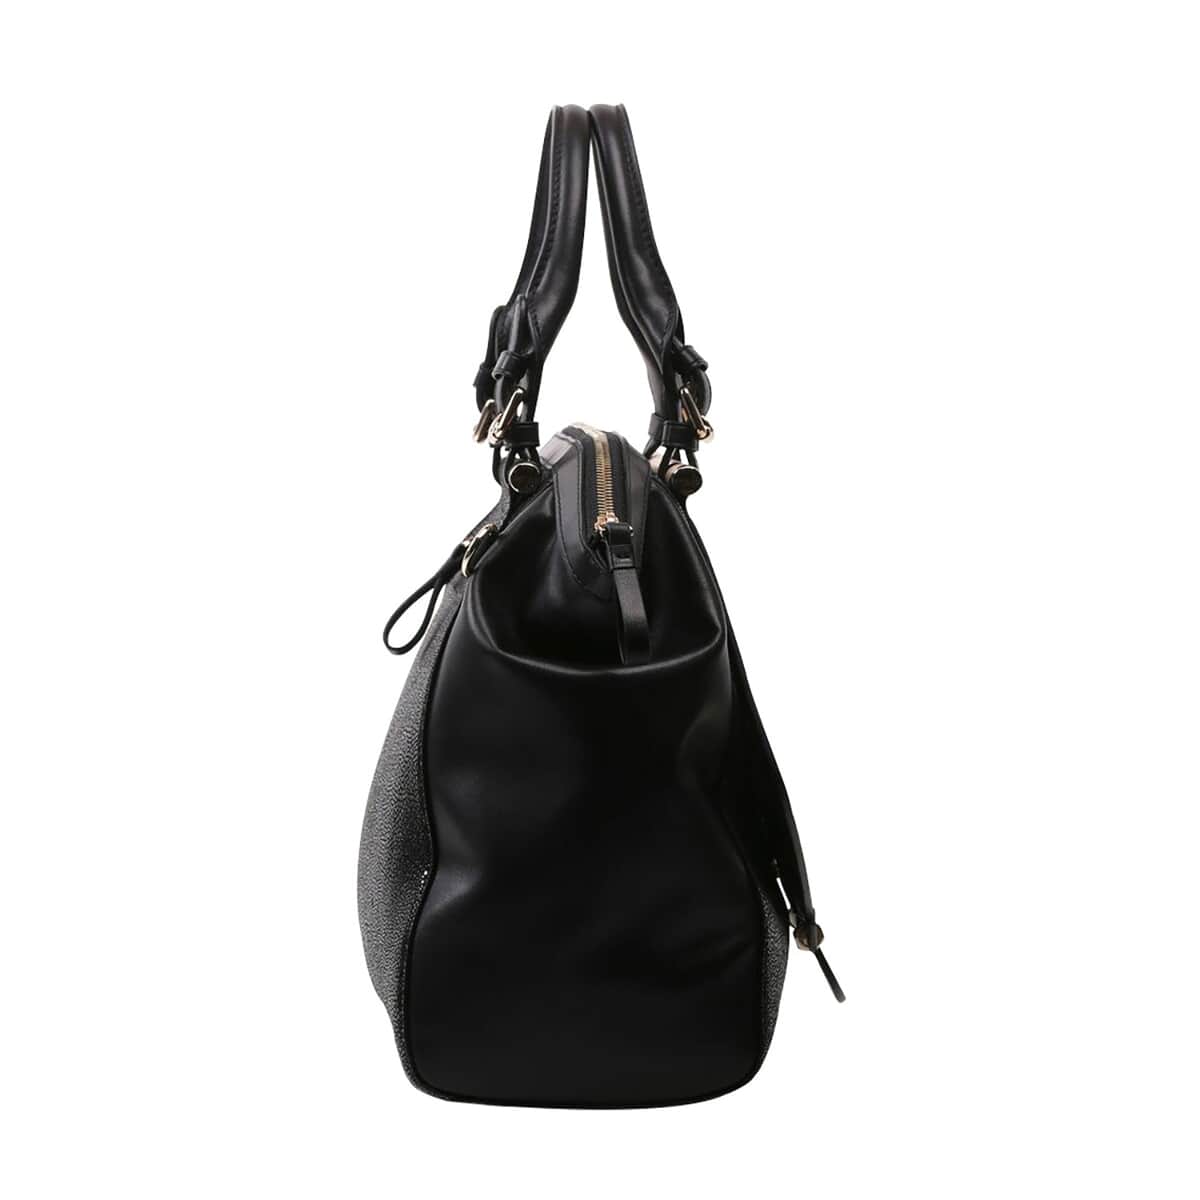 Buy Bellorita-Koi Fish Large Black Top Grain Leather Satchel Bag for ...